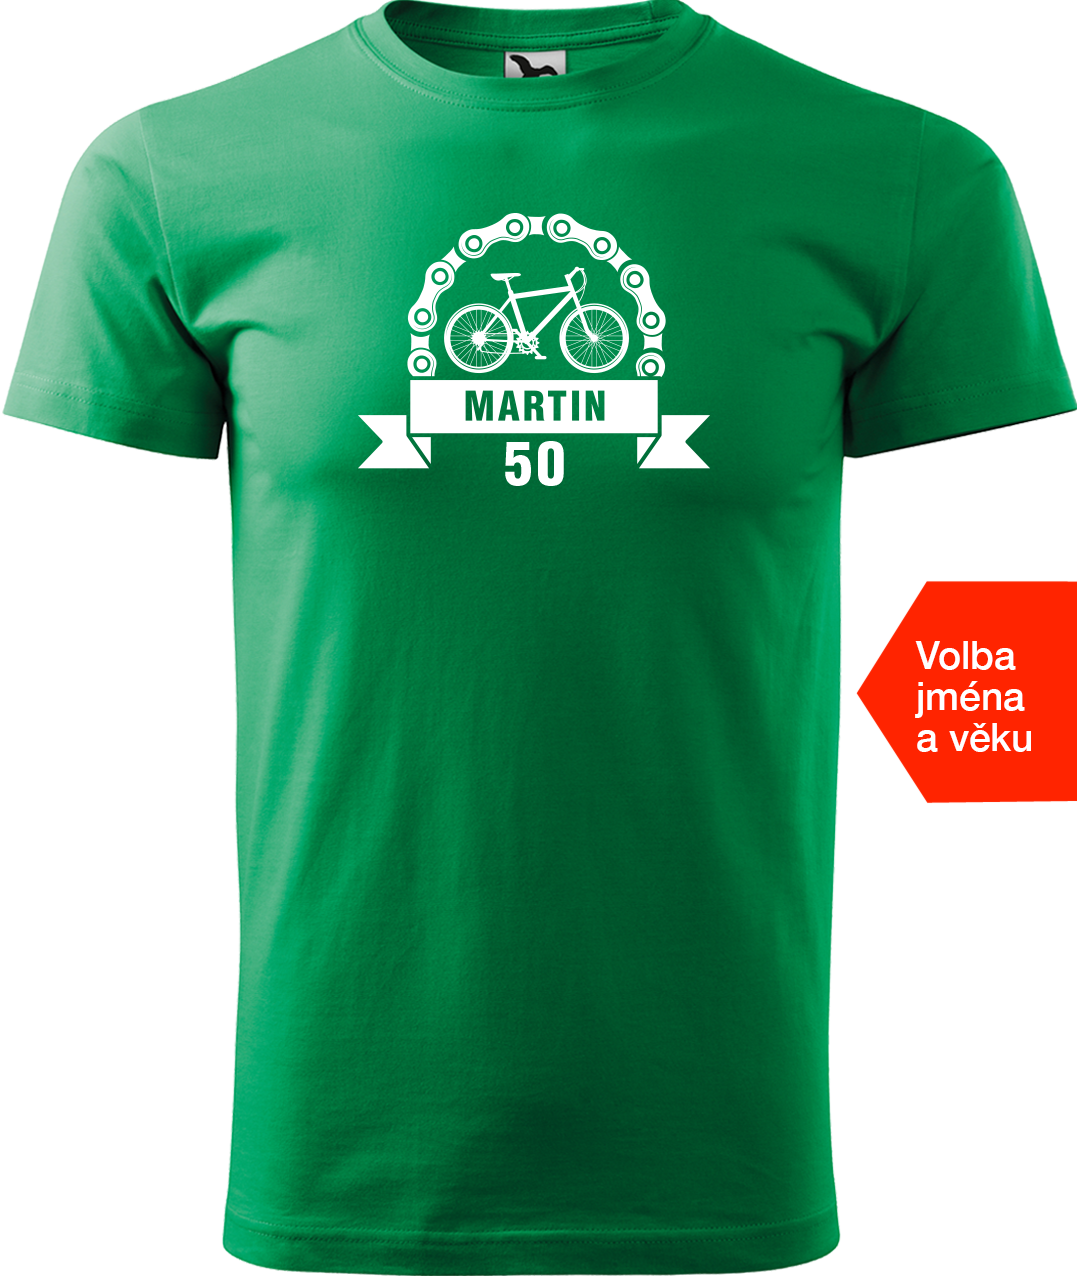 Pánské tričko pro cyklistu se jménem a věkem - Blahopřání Velikost: 2XL, Barva: Středně zelená (16)